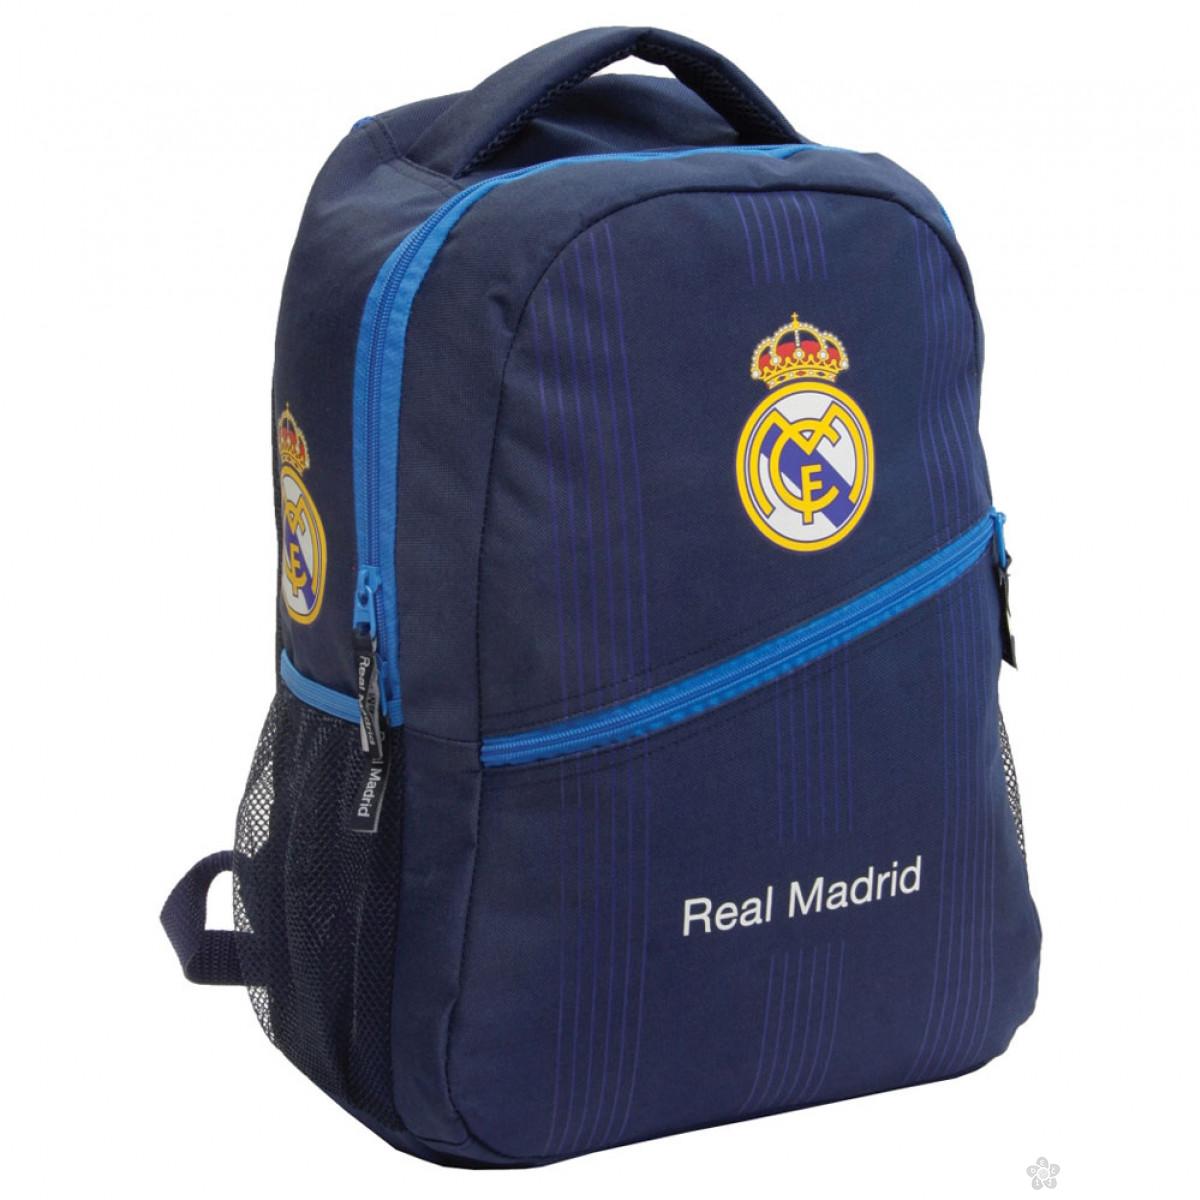 Ovalni ranac Real Madrid 52572 